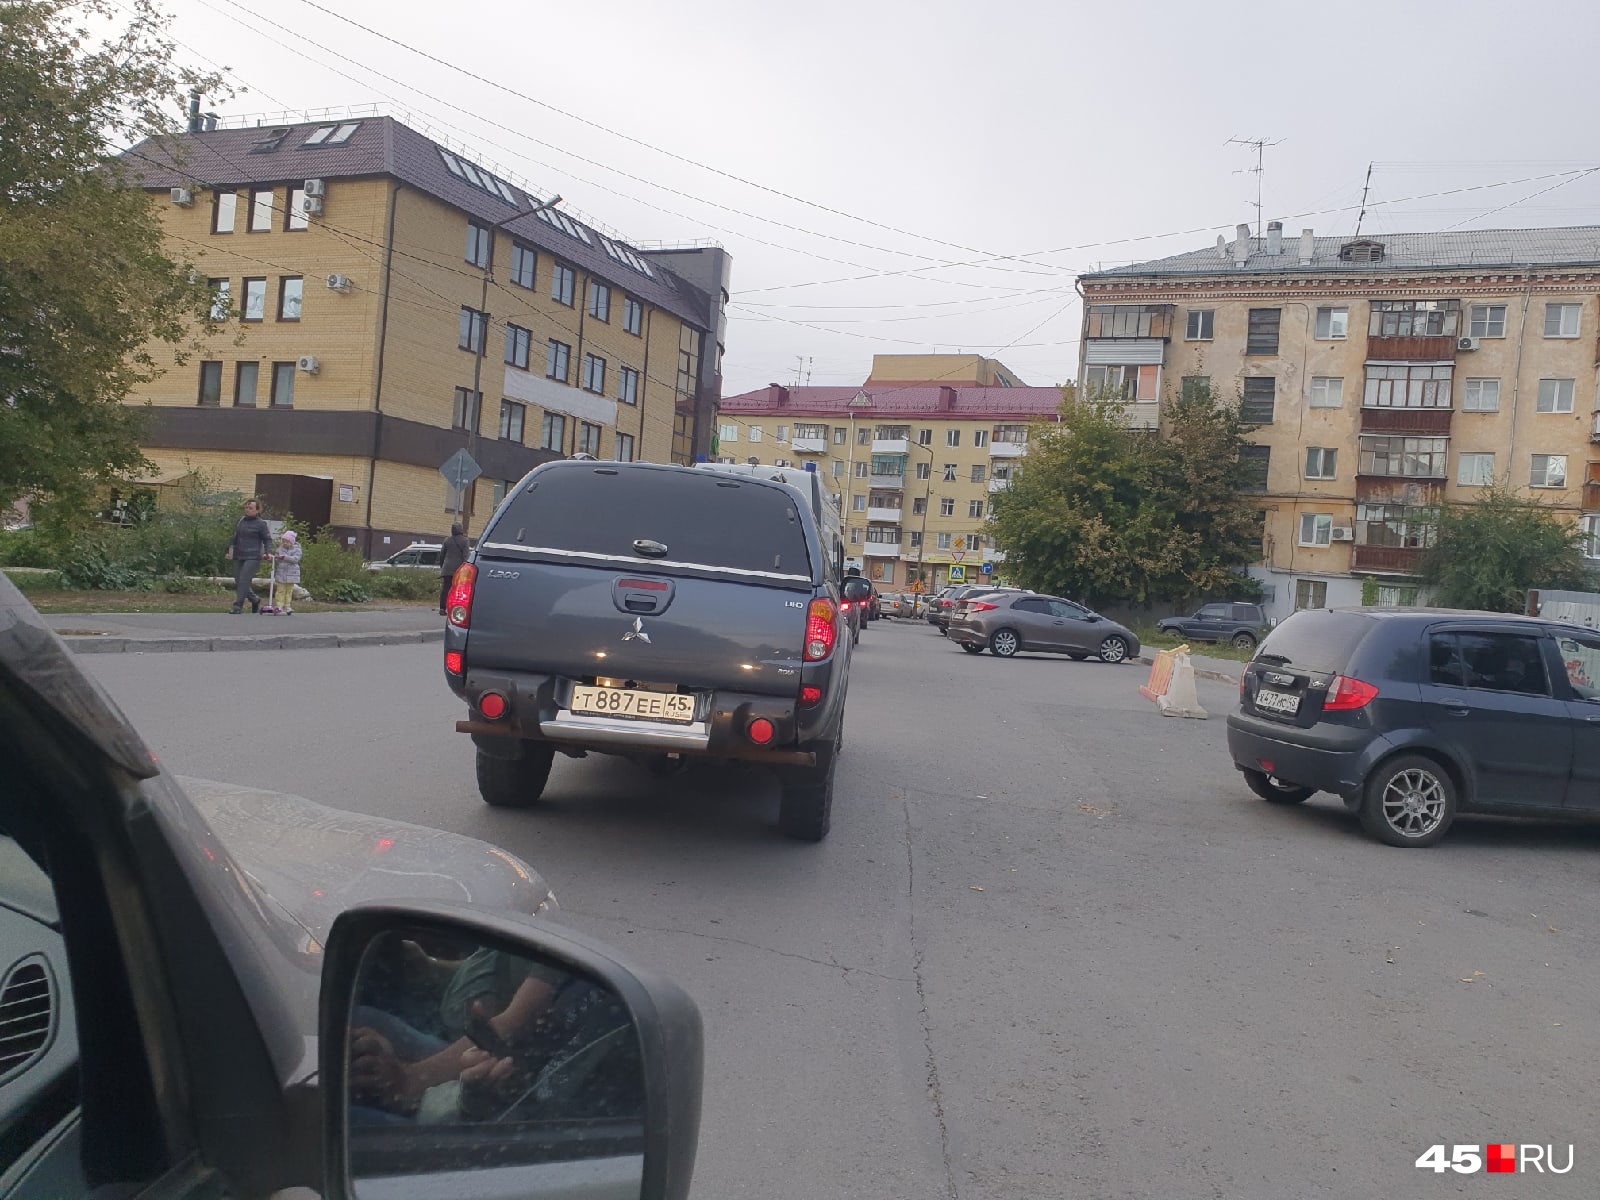 Водители говорят, что из-за закрытия дороги на улице Пушкина пробки возникают на близлежащих улицах